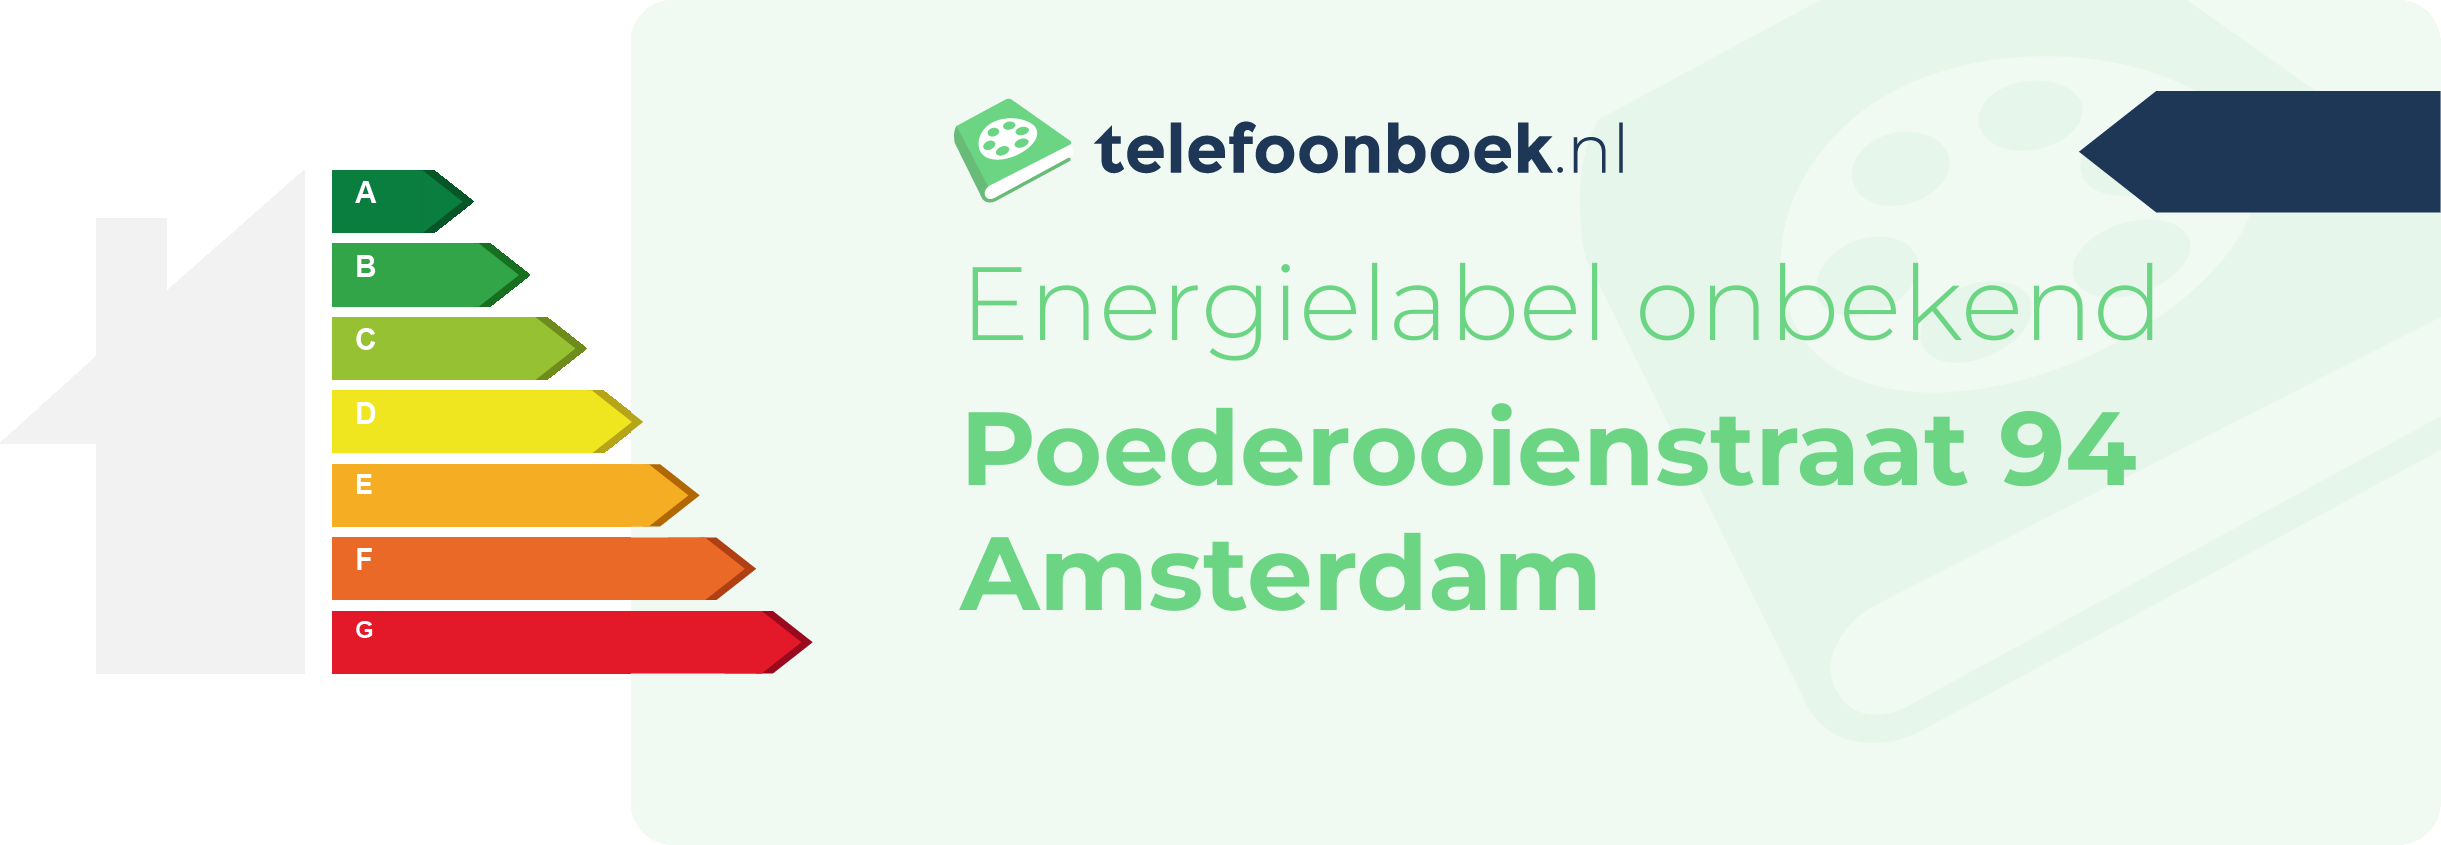 Energielabel Poederooienstraat 94 Amsterdam